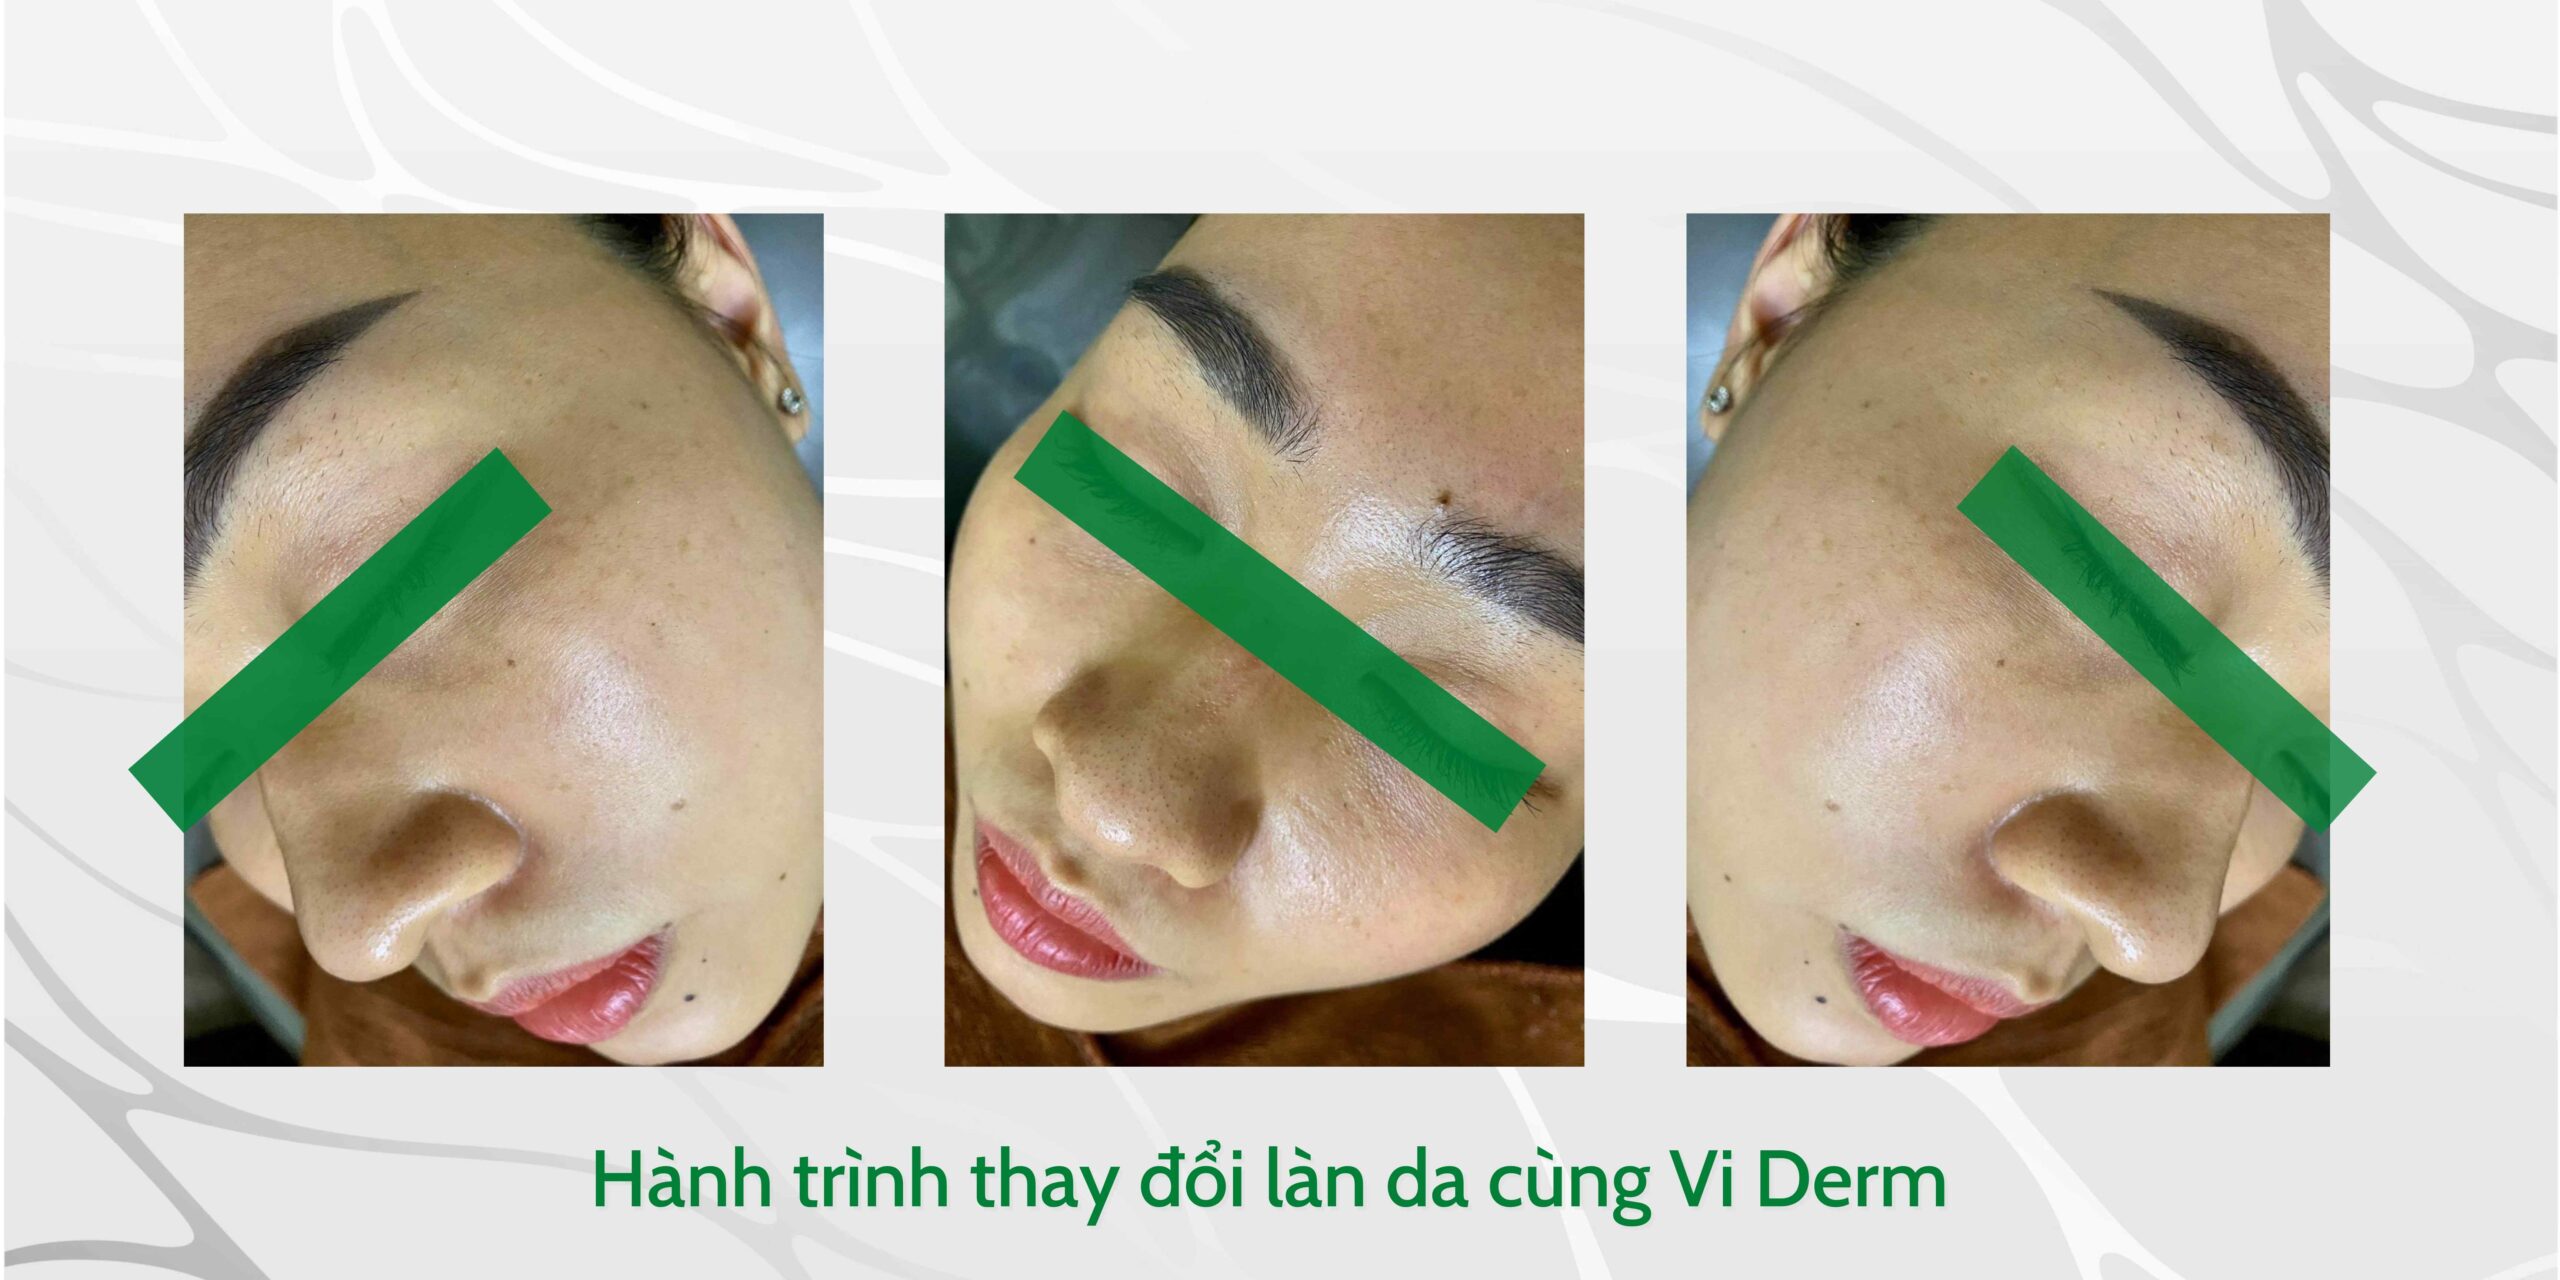 Hành trình thay đổi làn da sau 1 tháng sử dụng Bộ Sản Phẩm Loại Bỏ Sắc Tố VI Derm Beauty Pigment Correction System.